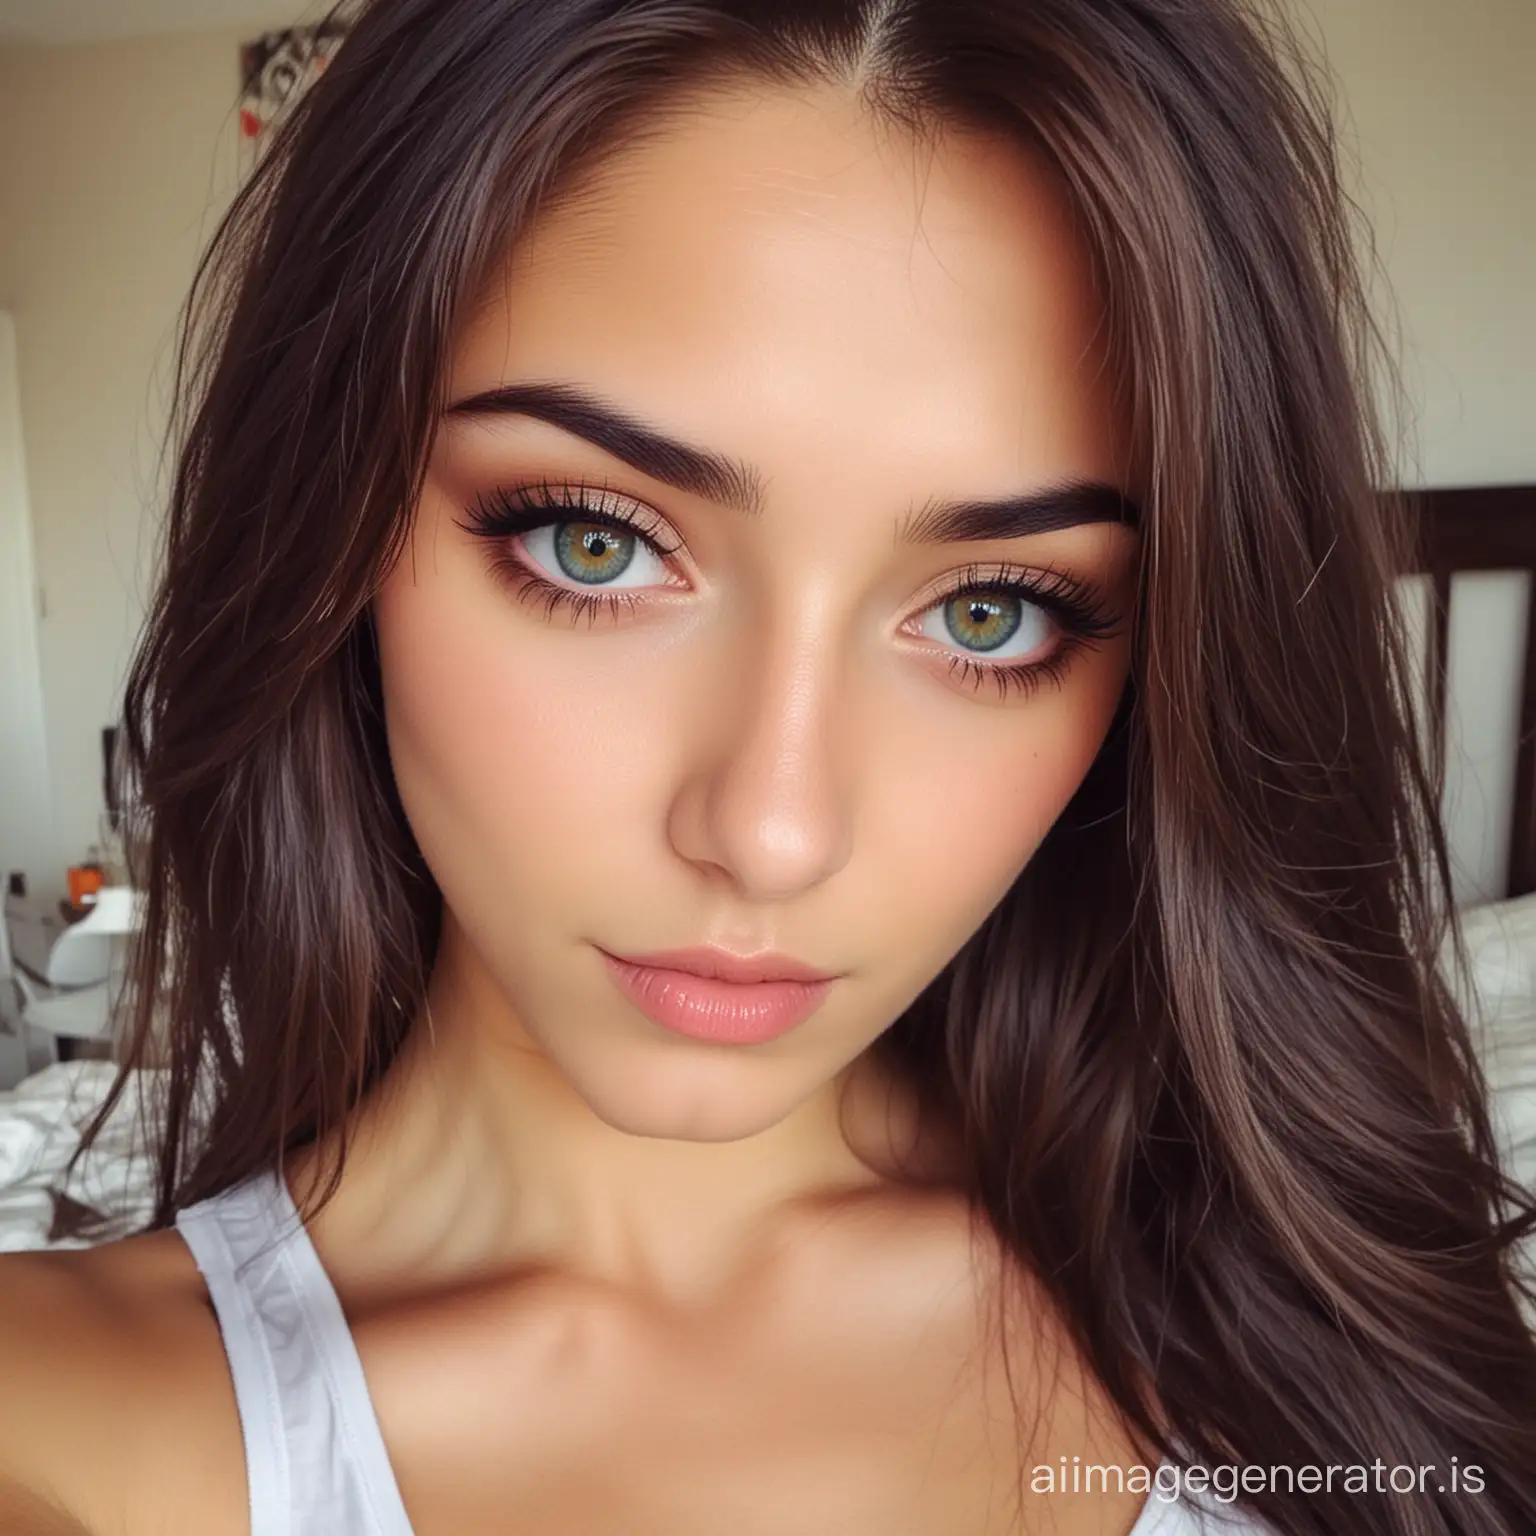 Beautiful turkısh girl with color eyes selfie at bedroom